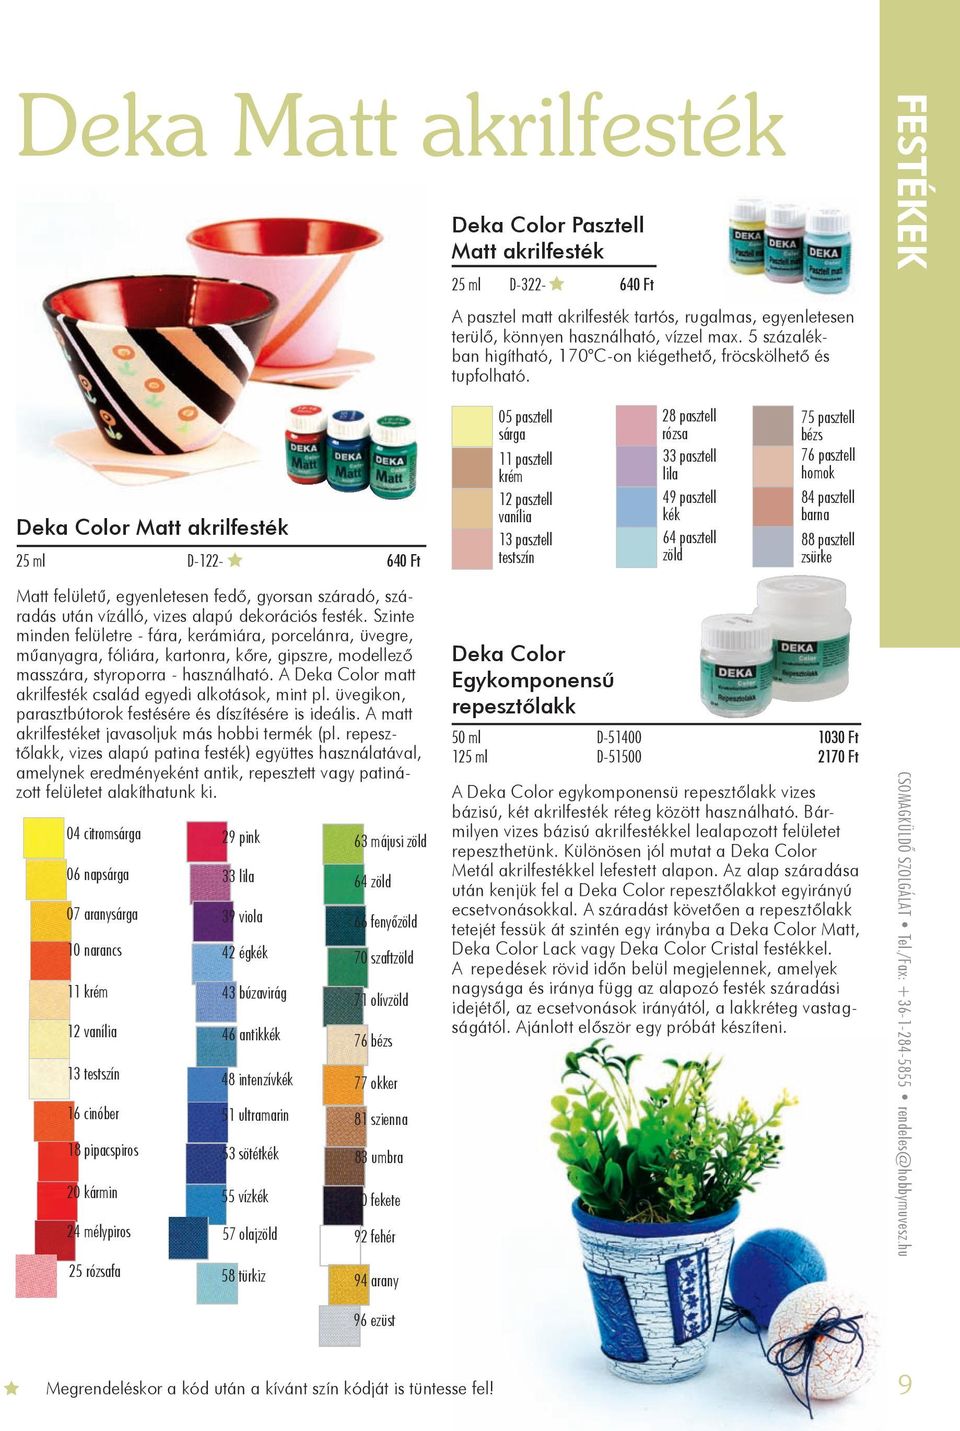 A Deka Color matt akrilfesték család egyedi alkotások, mint pl. üvegikon, parasztbútorok festésére és díszítésére is ideális. A matt akrilfestéket javasoljuk más hobbi termék (pl.